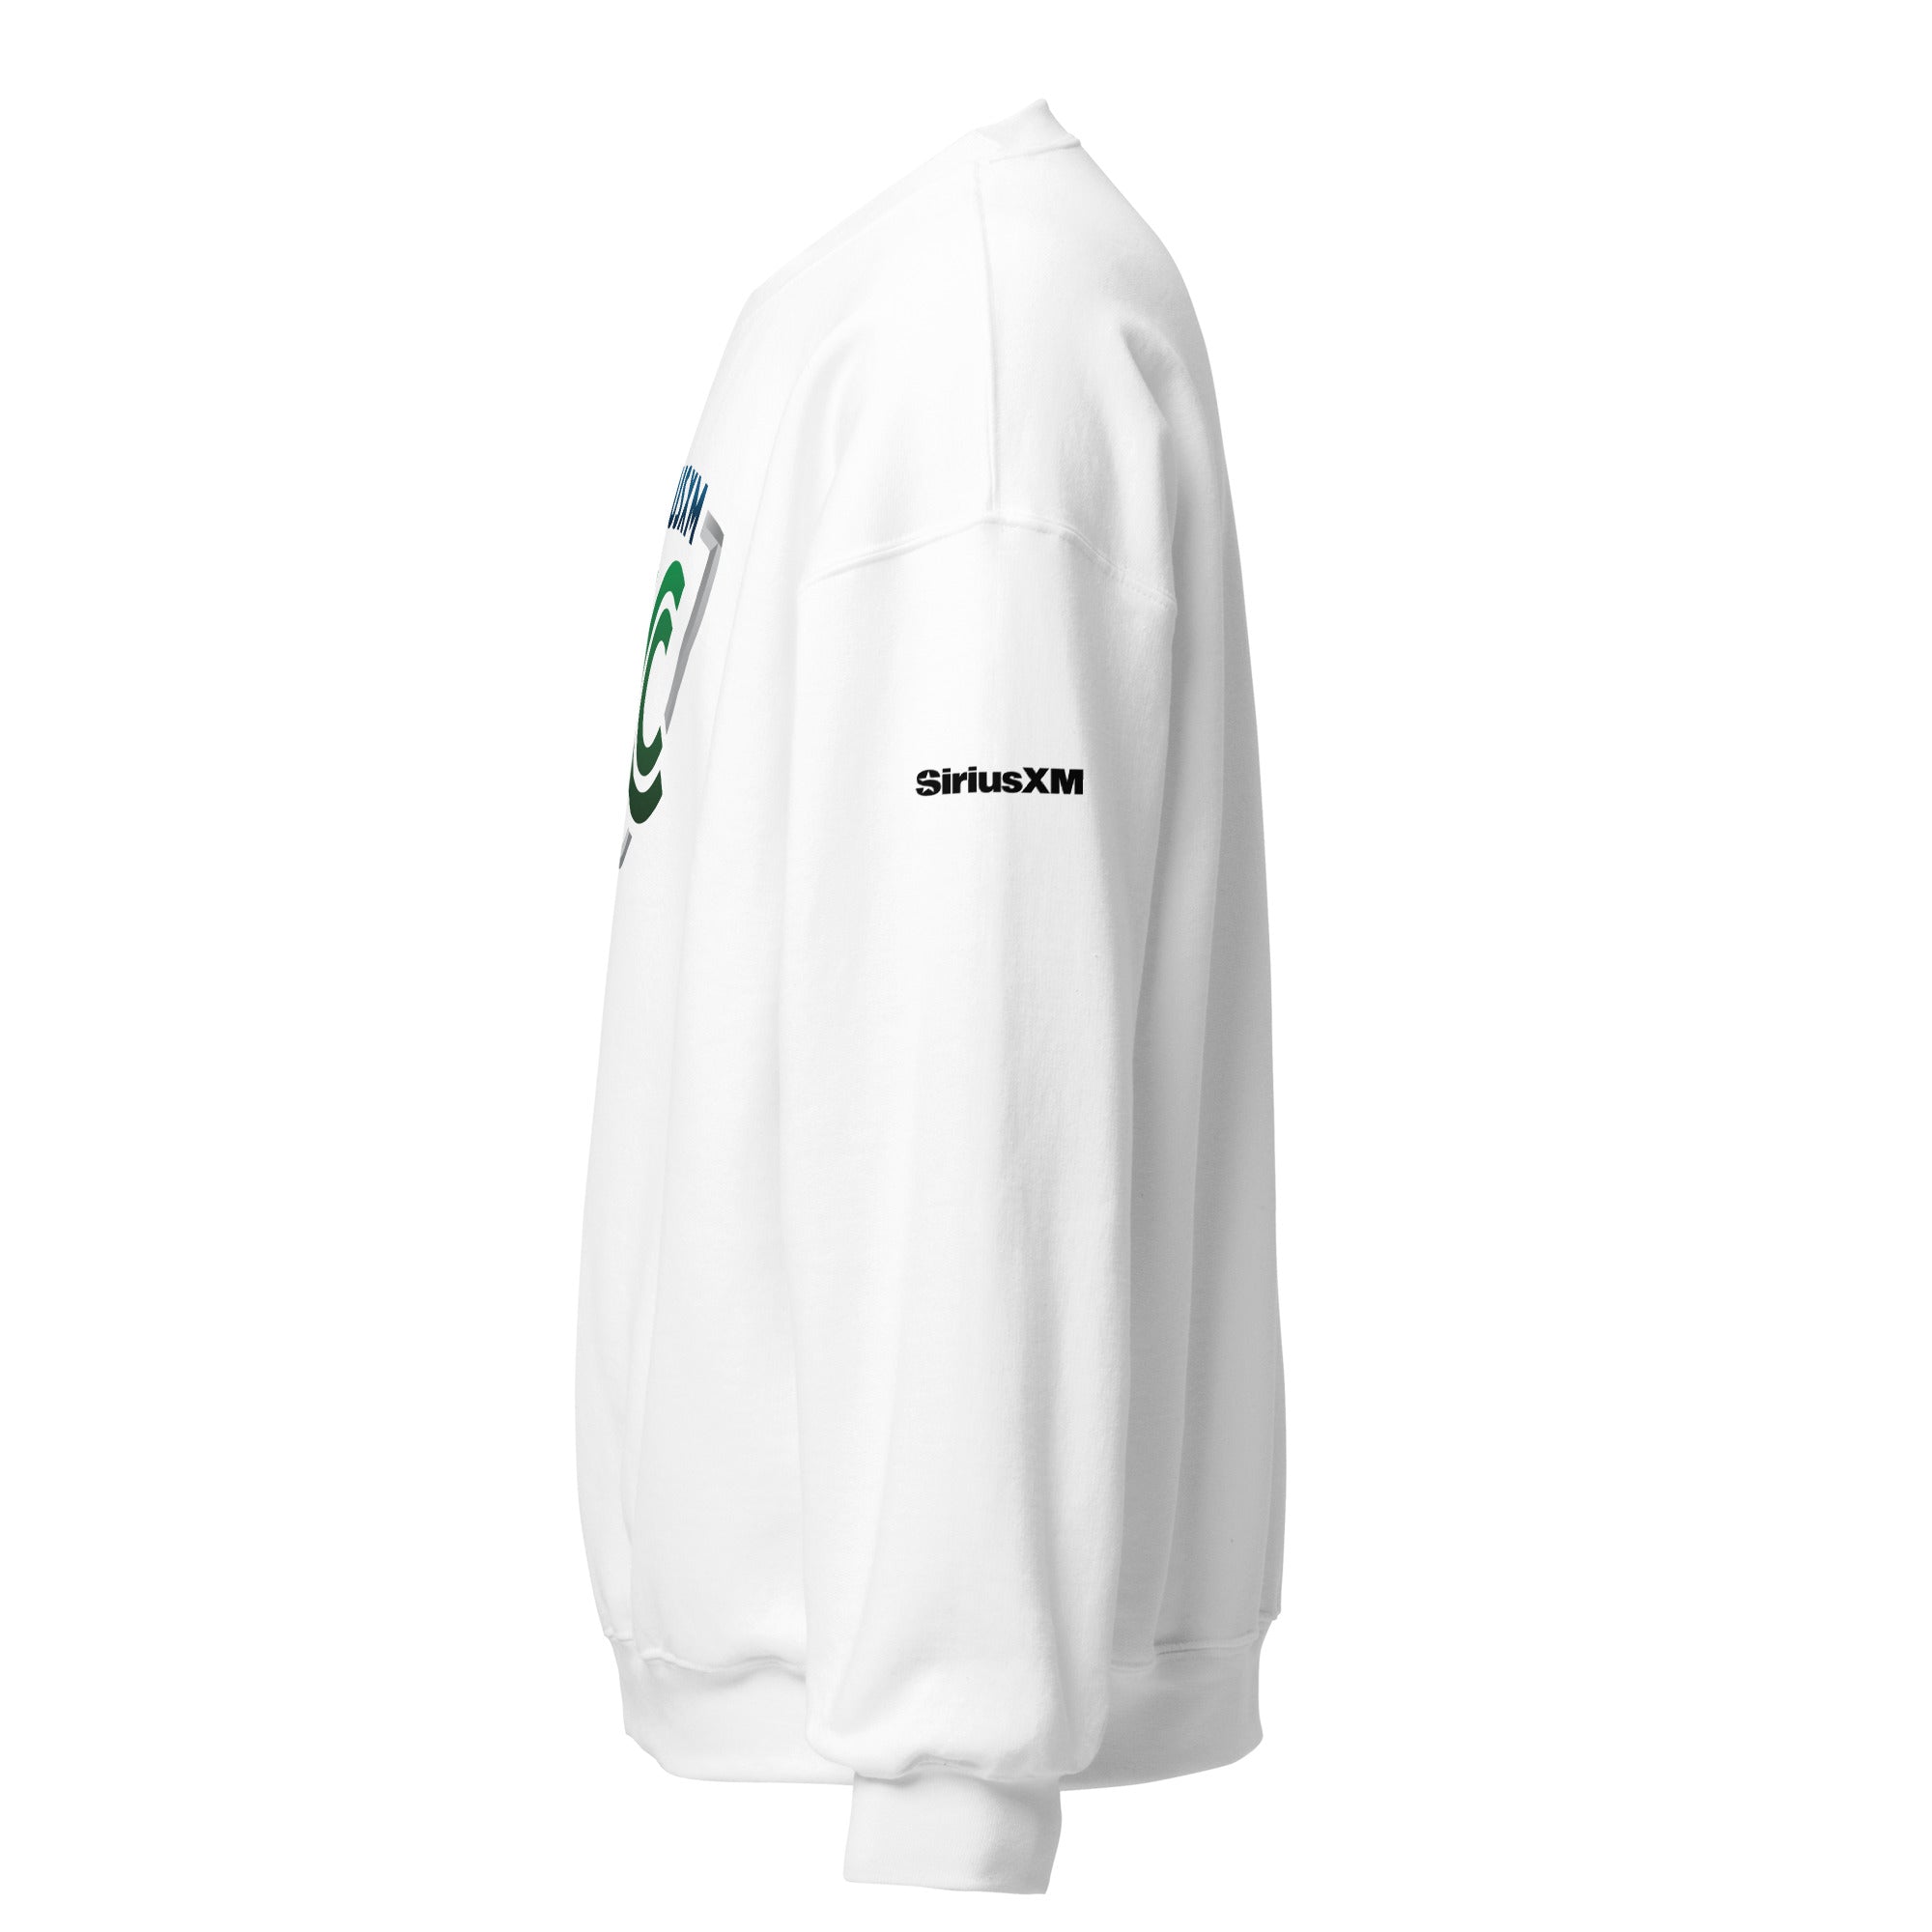 SiriusXM FC: Sweatshirt (White)